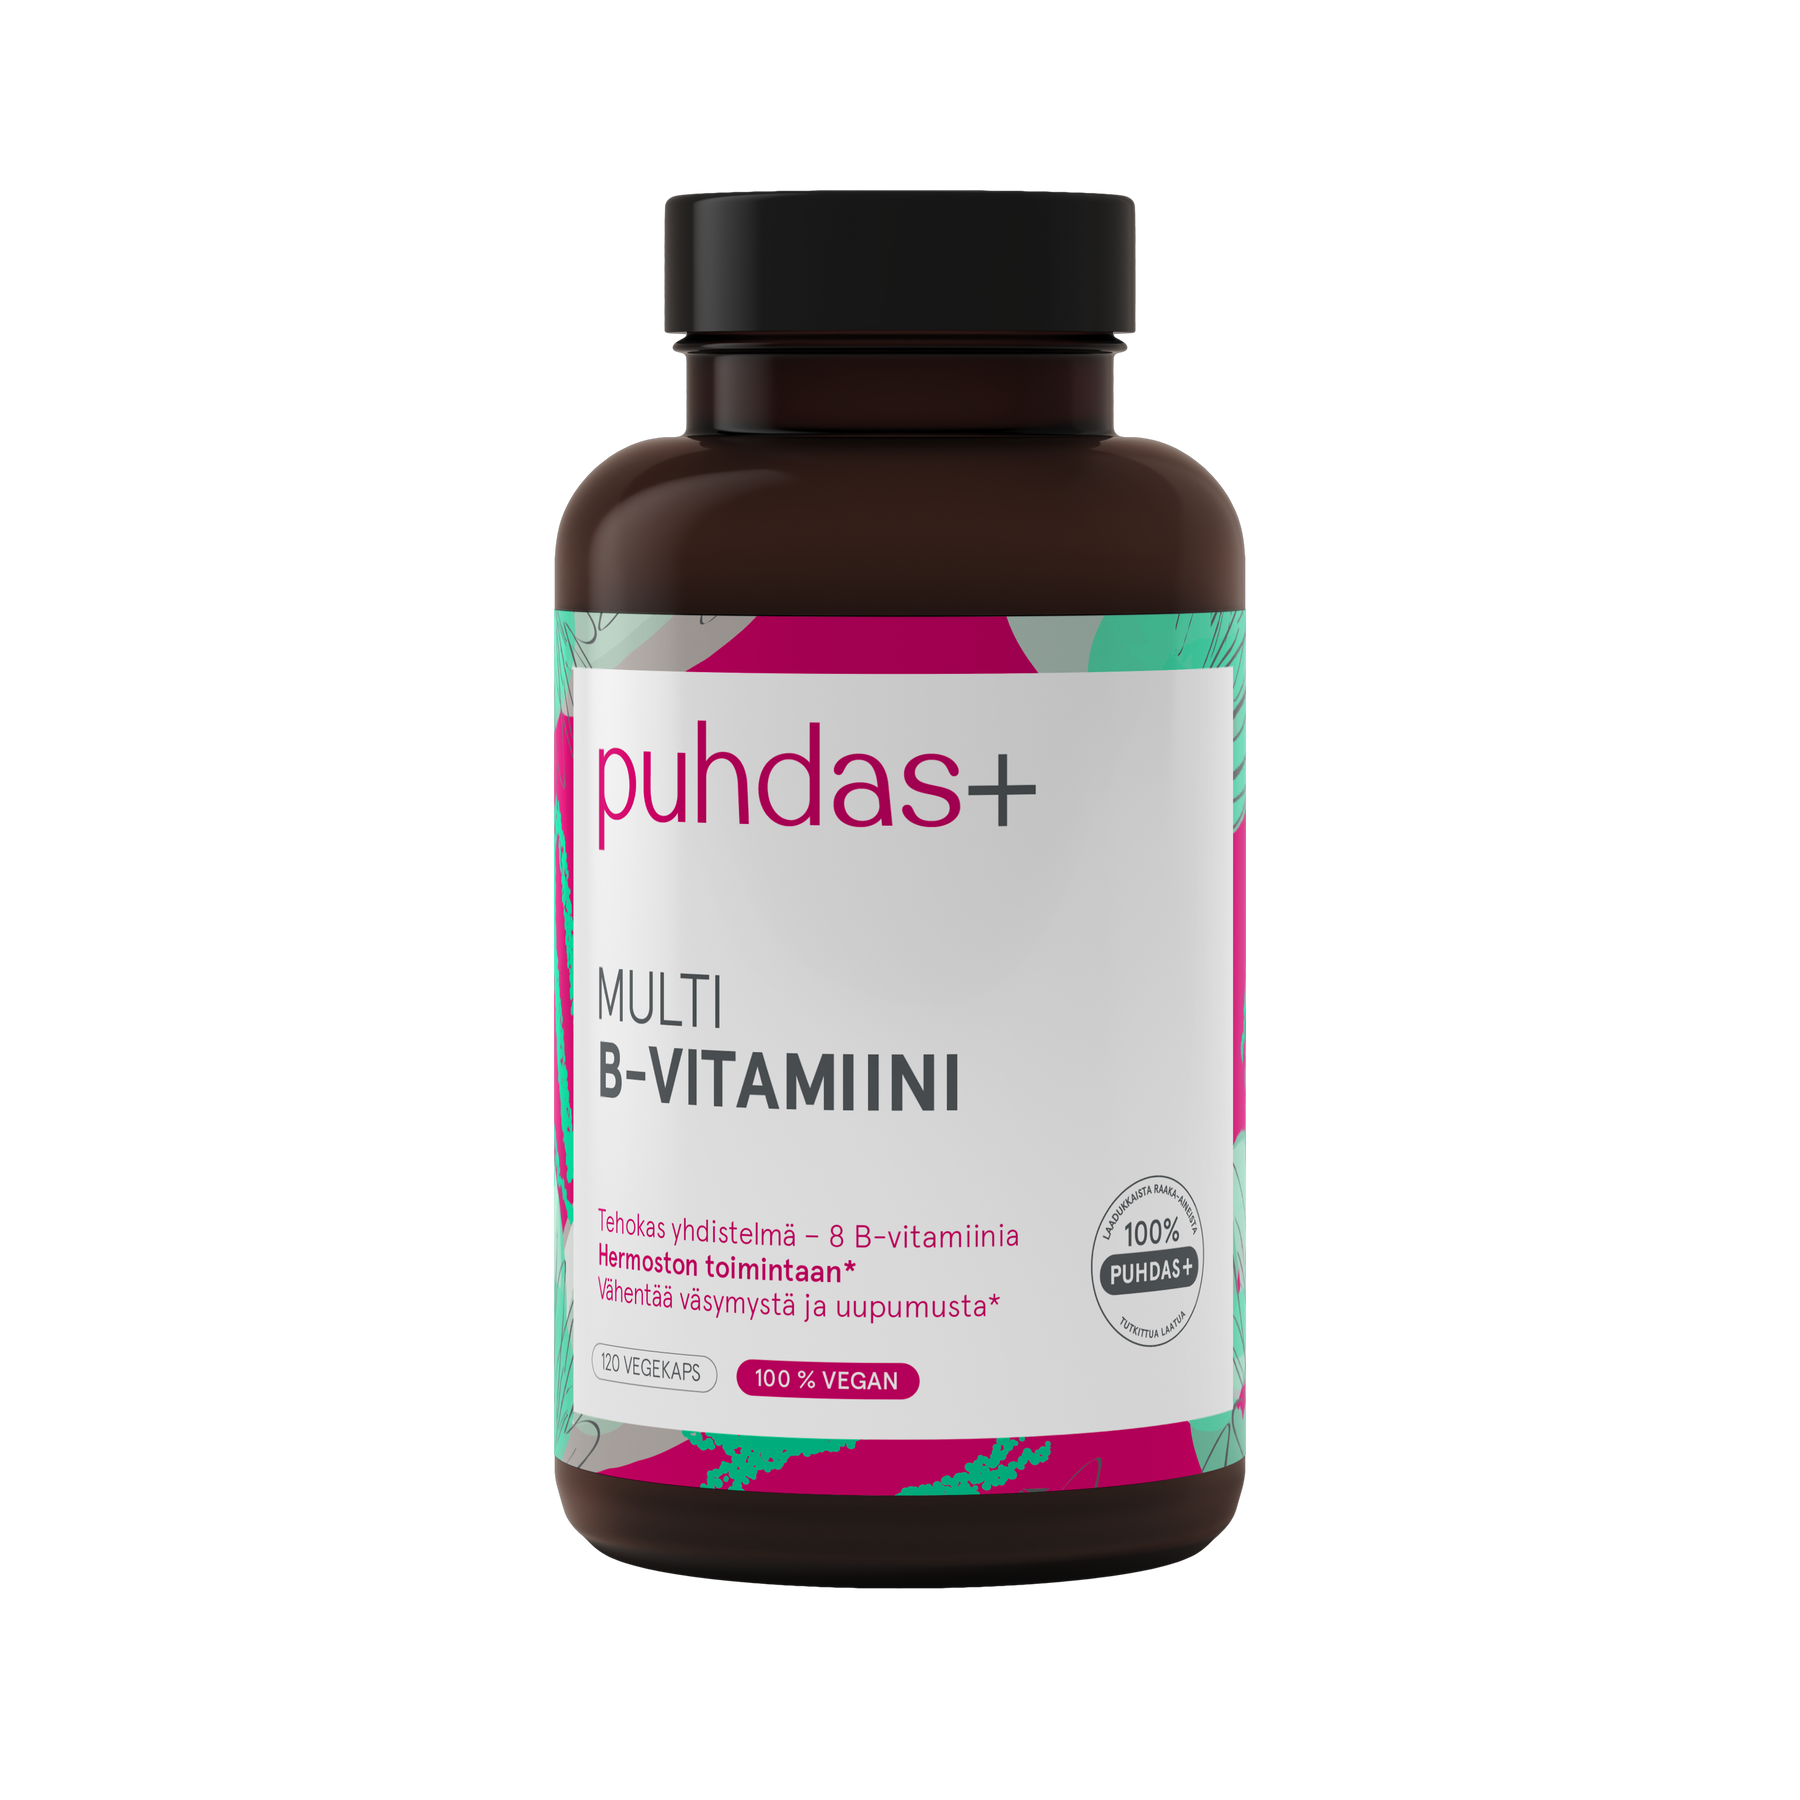 Puhdas+ Multi B-vitamiini 120 kaps.